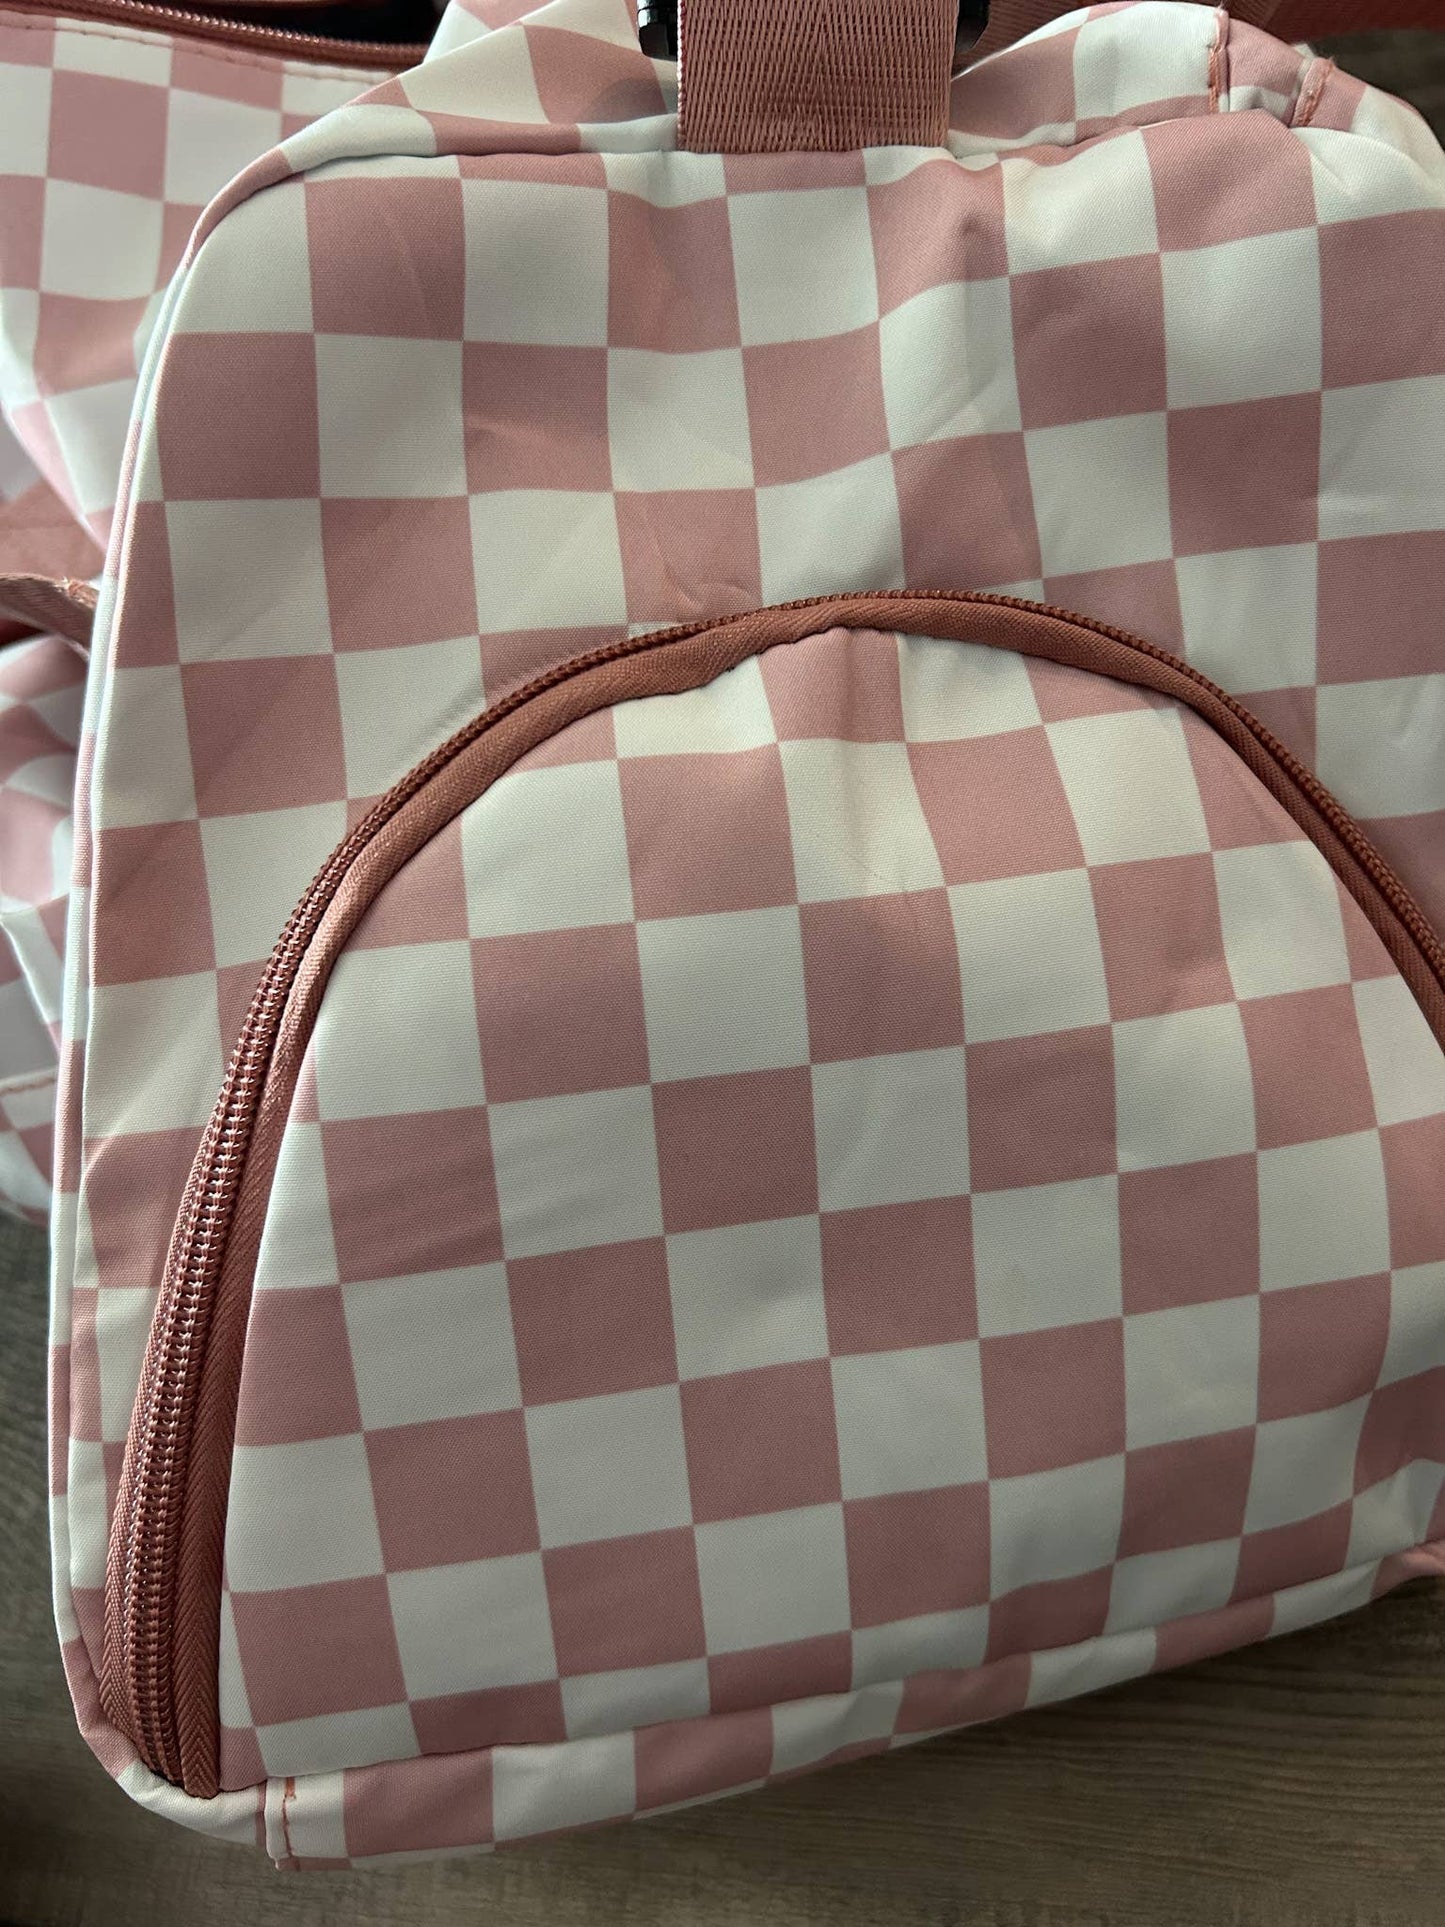 Checkered Duffel Bags